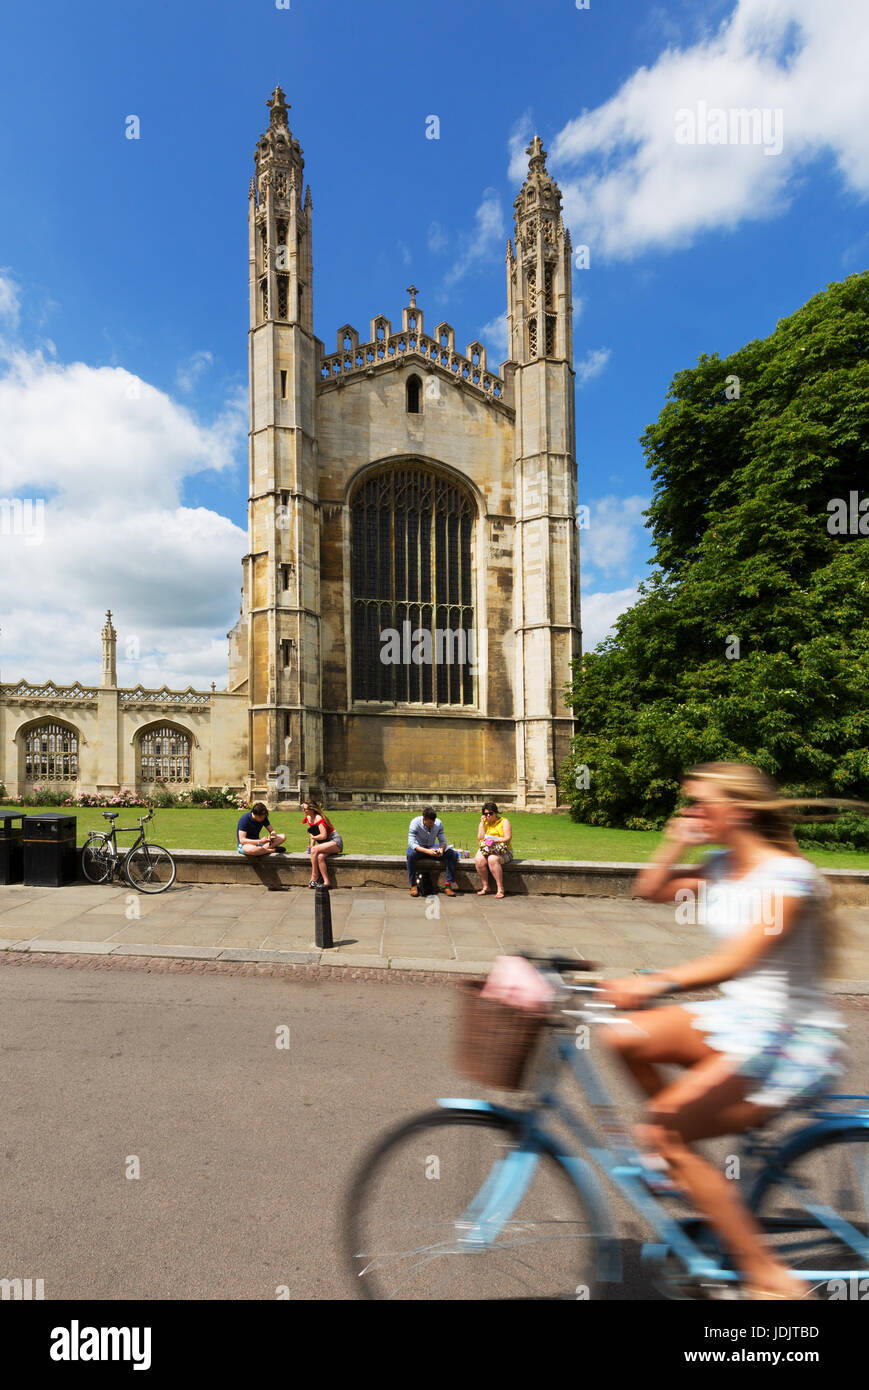 Eine Frau vorbei Kings College Chapel, Cambridge Stadtzentrum im Sommer Radfahren; Cambridge England UK Stockfoto